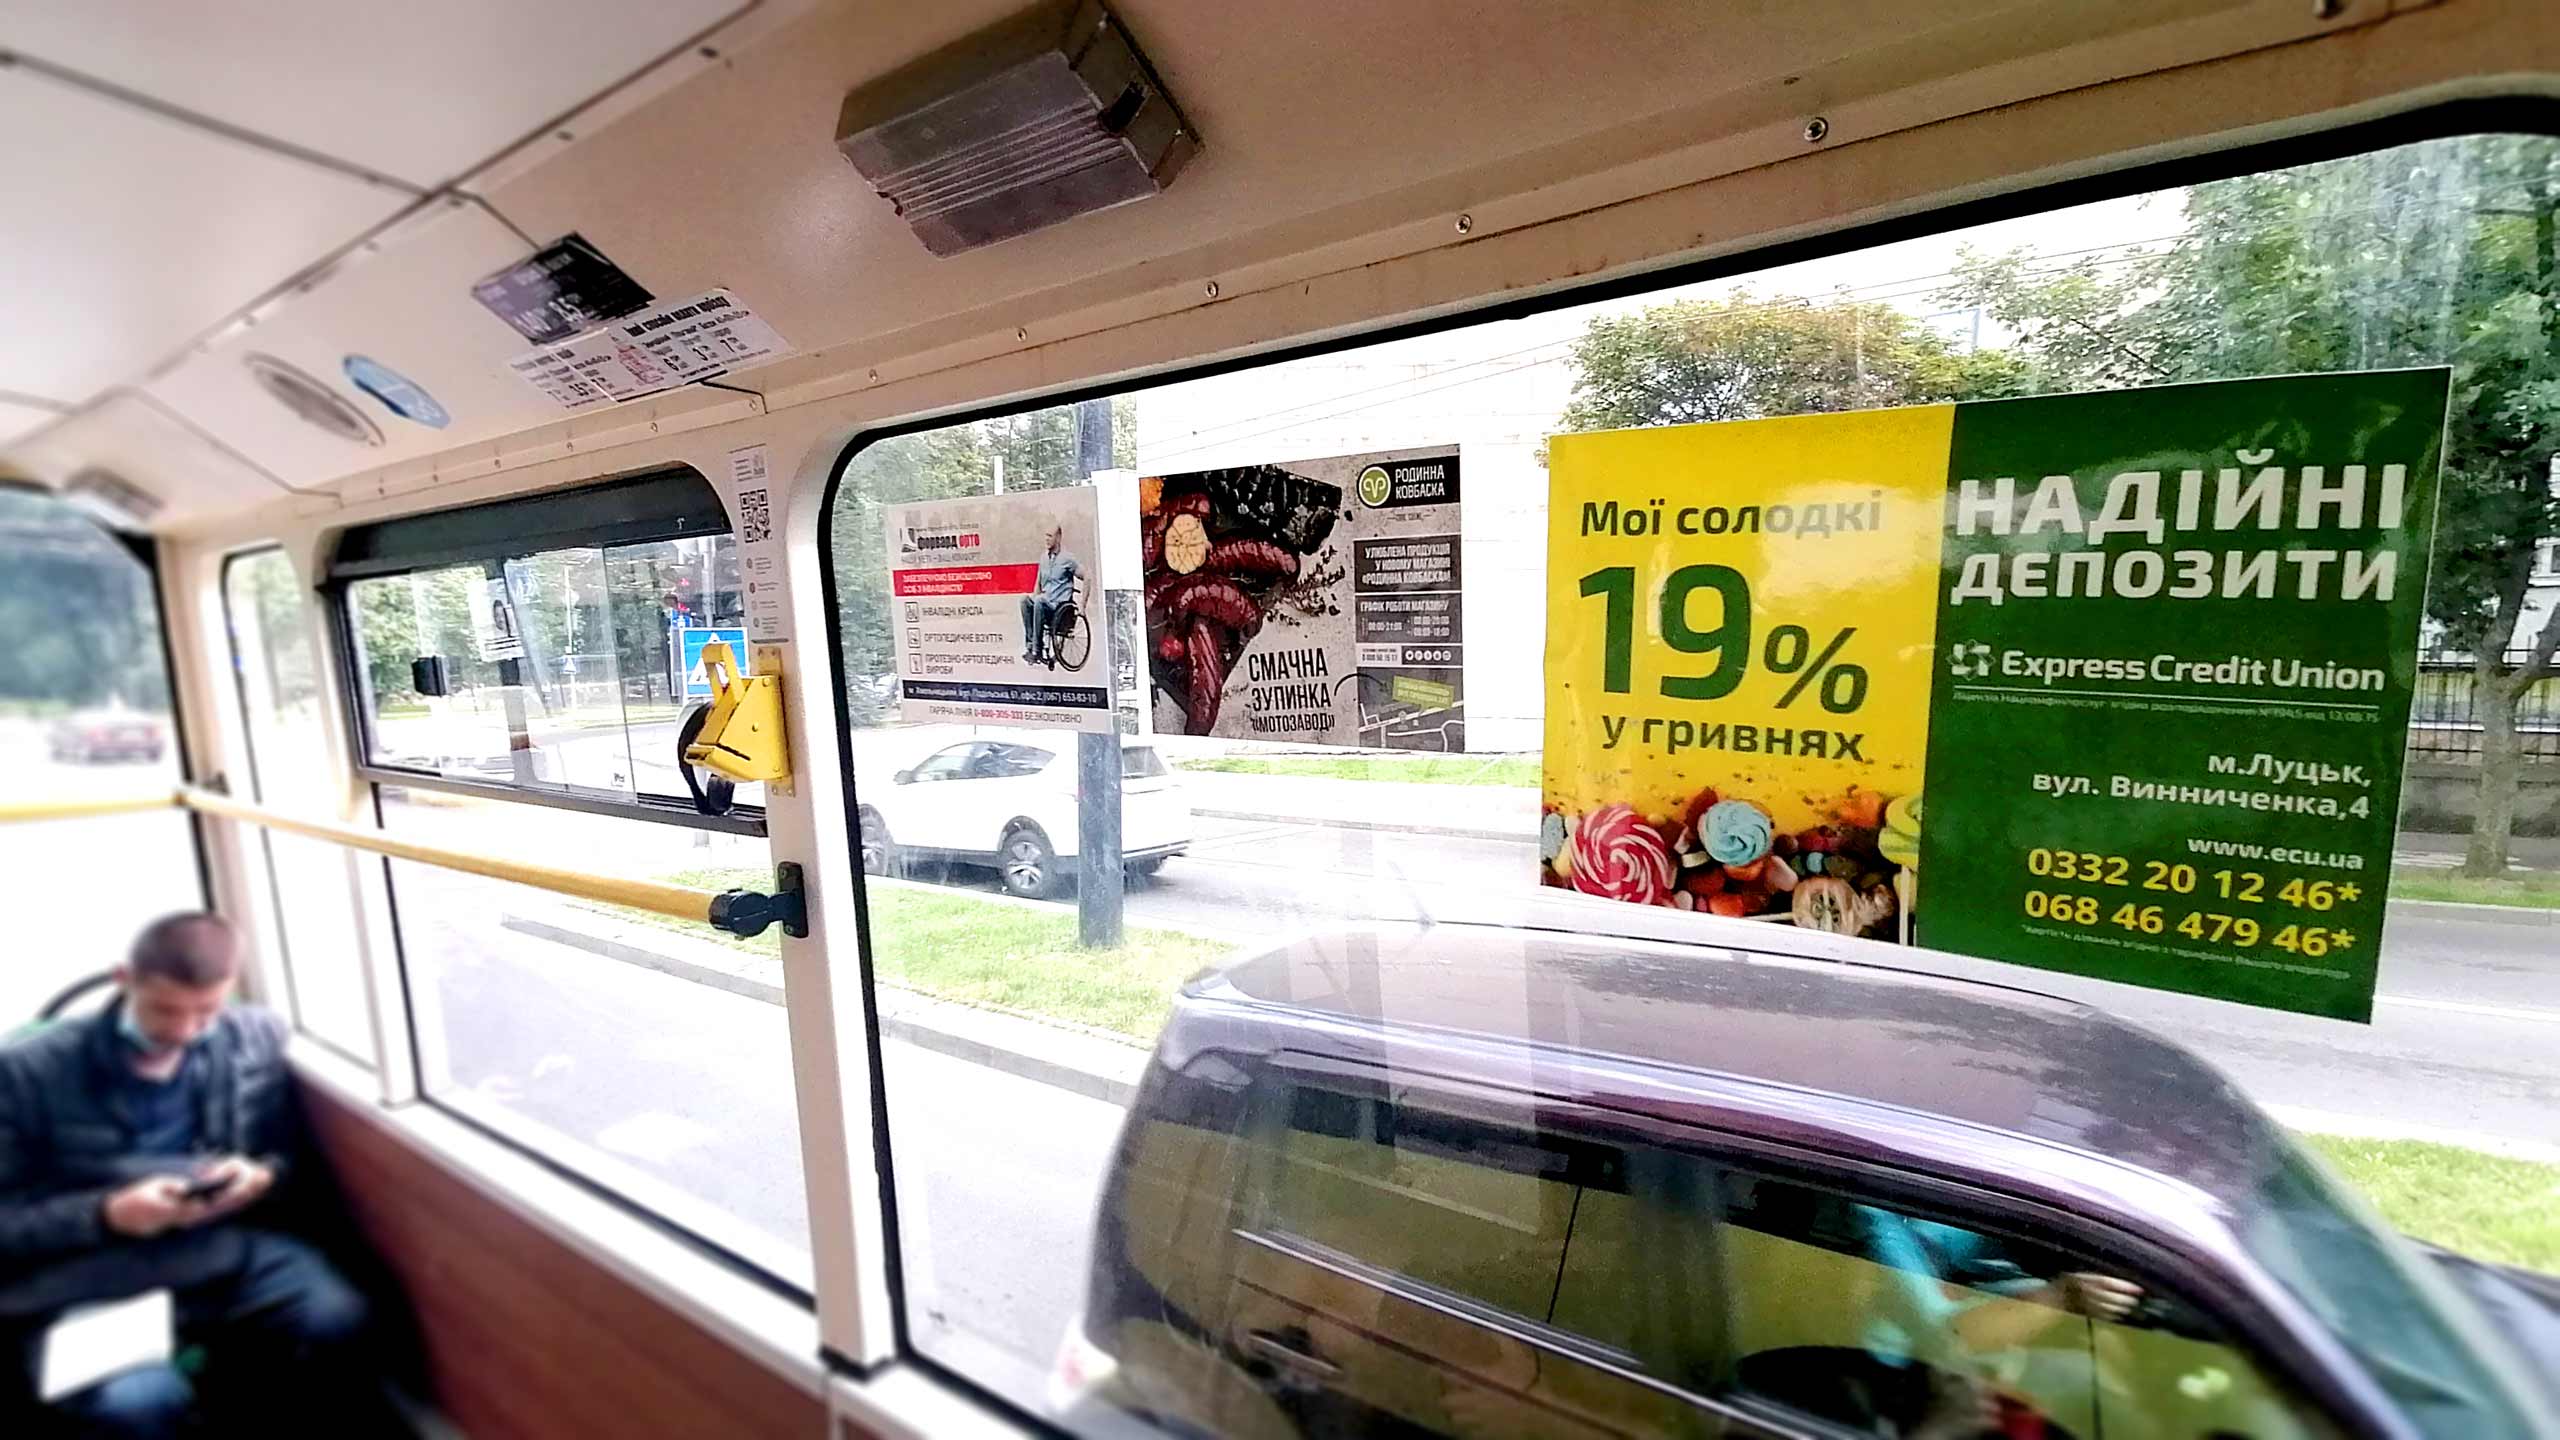 реклама в транспорте Харьков цены